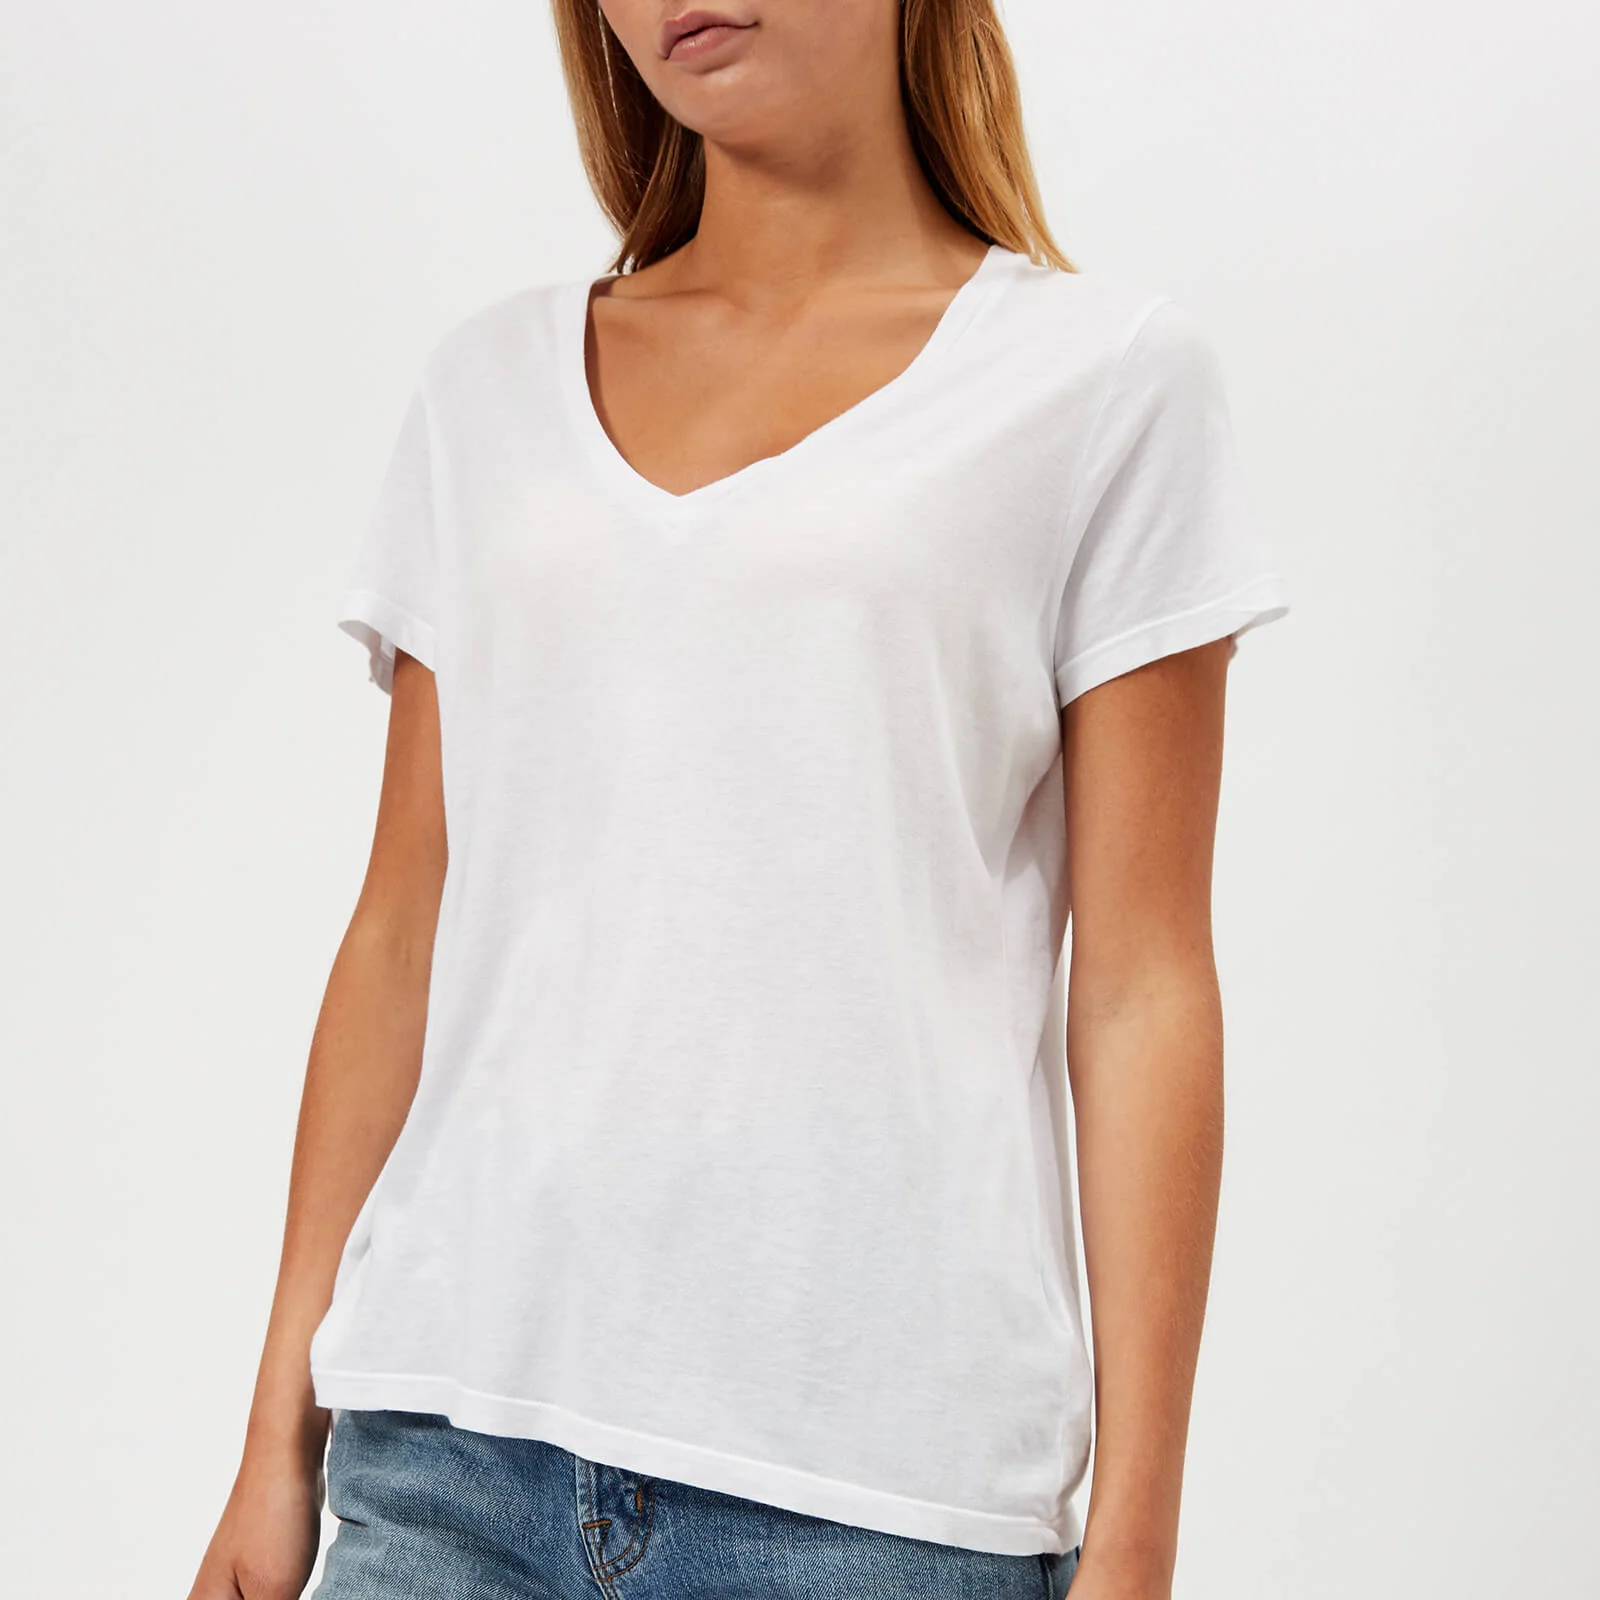 J Brand Women's Janis V Neck T-Shirt - White Image 1